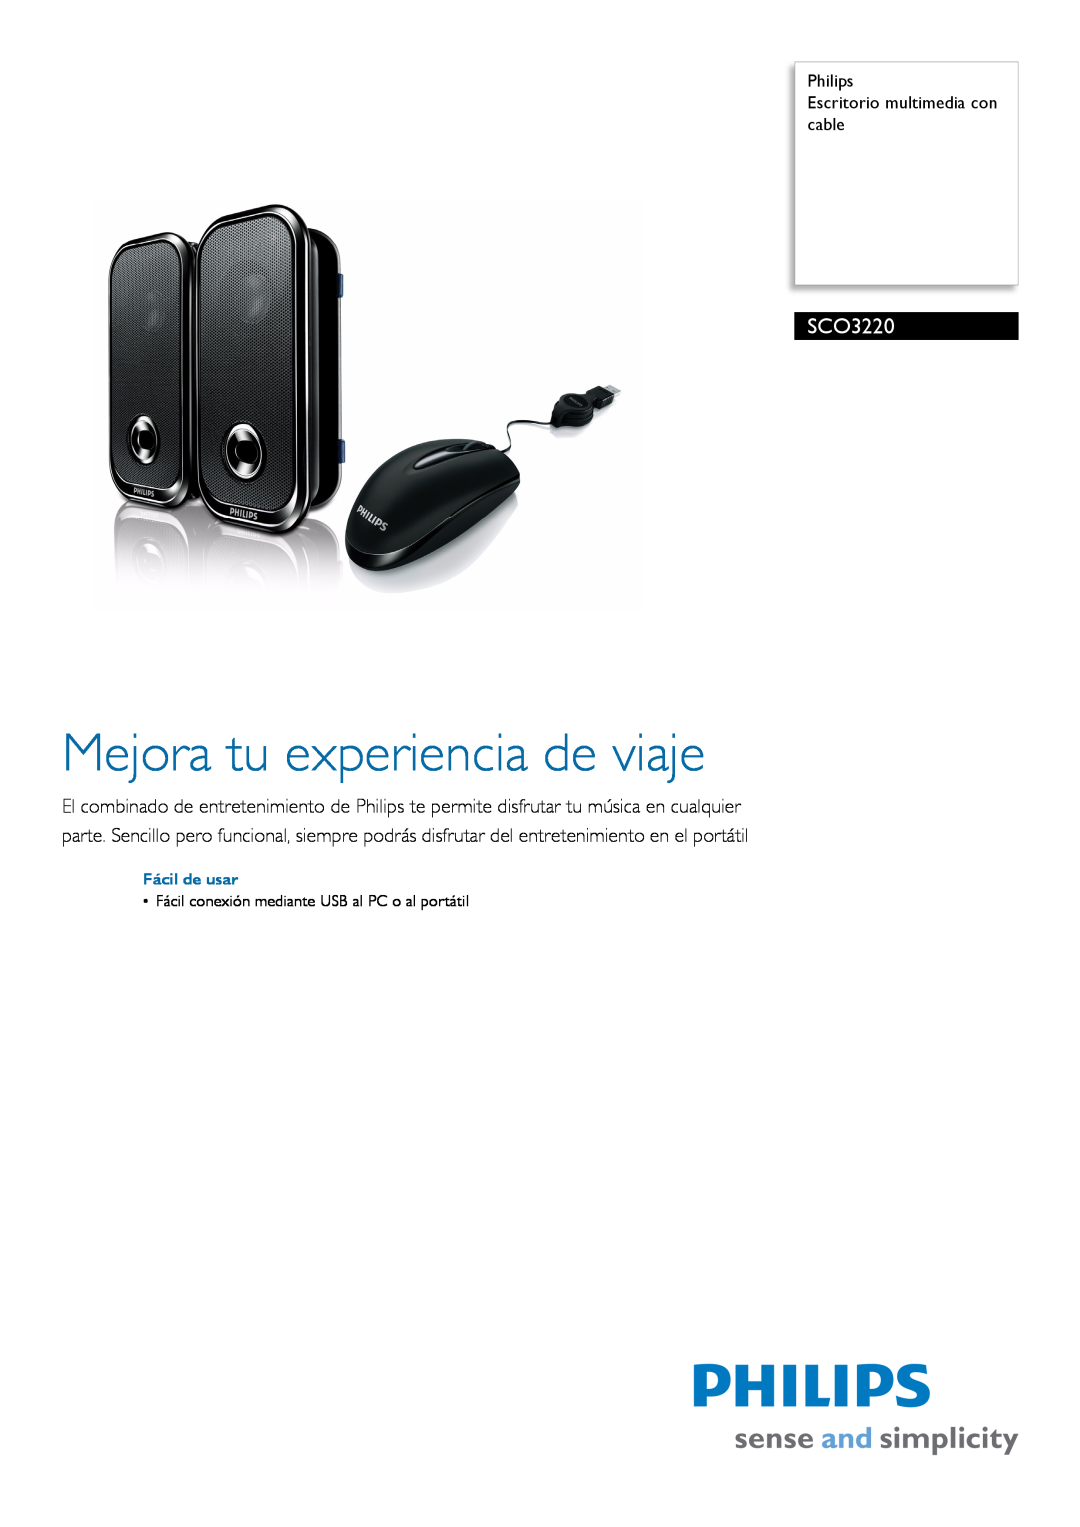 Philips SCO3220 manual Philips Escritorio multimedia con cable, Fácil de usar, Mejora tu experiencia de viaje 